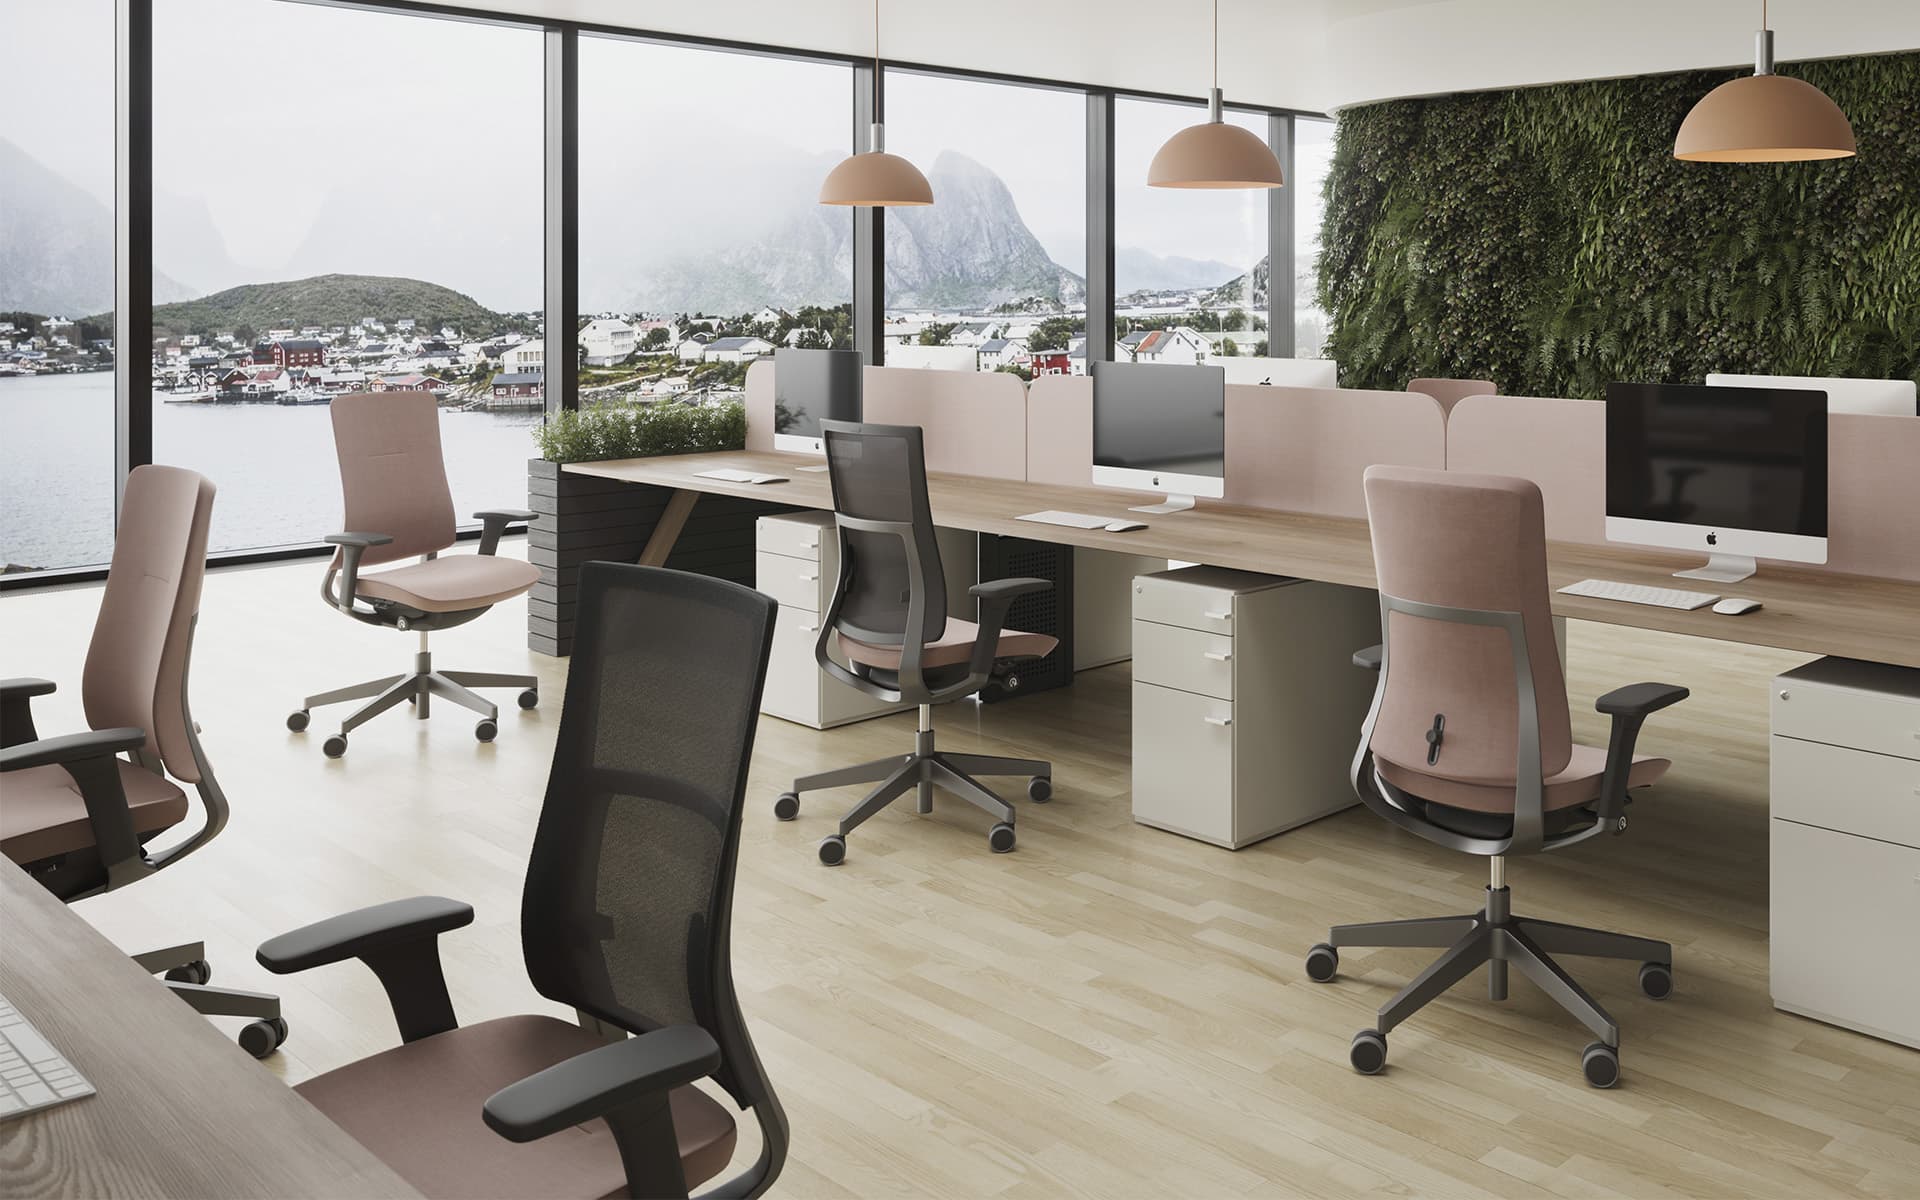 Mehrere Profim Violle Bürostühle in Altrosa in stylischem Grossraumbüro mit grosser Fensterfront und Blick auf Fjord